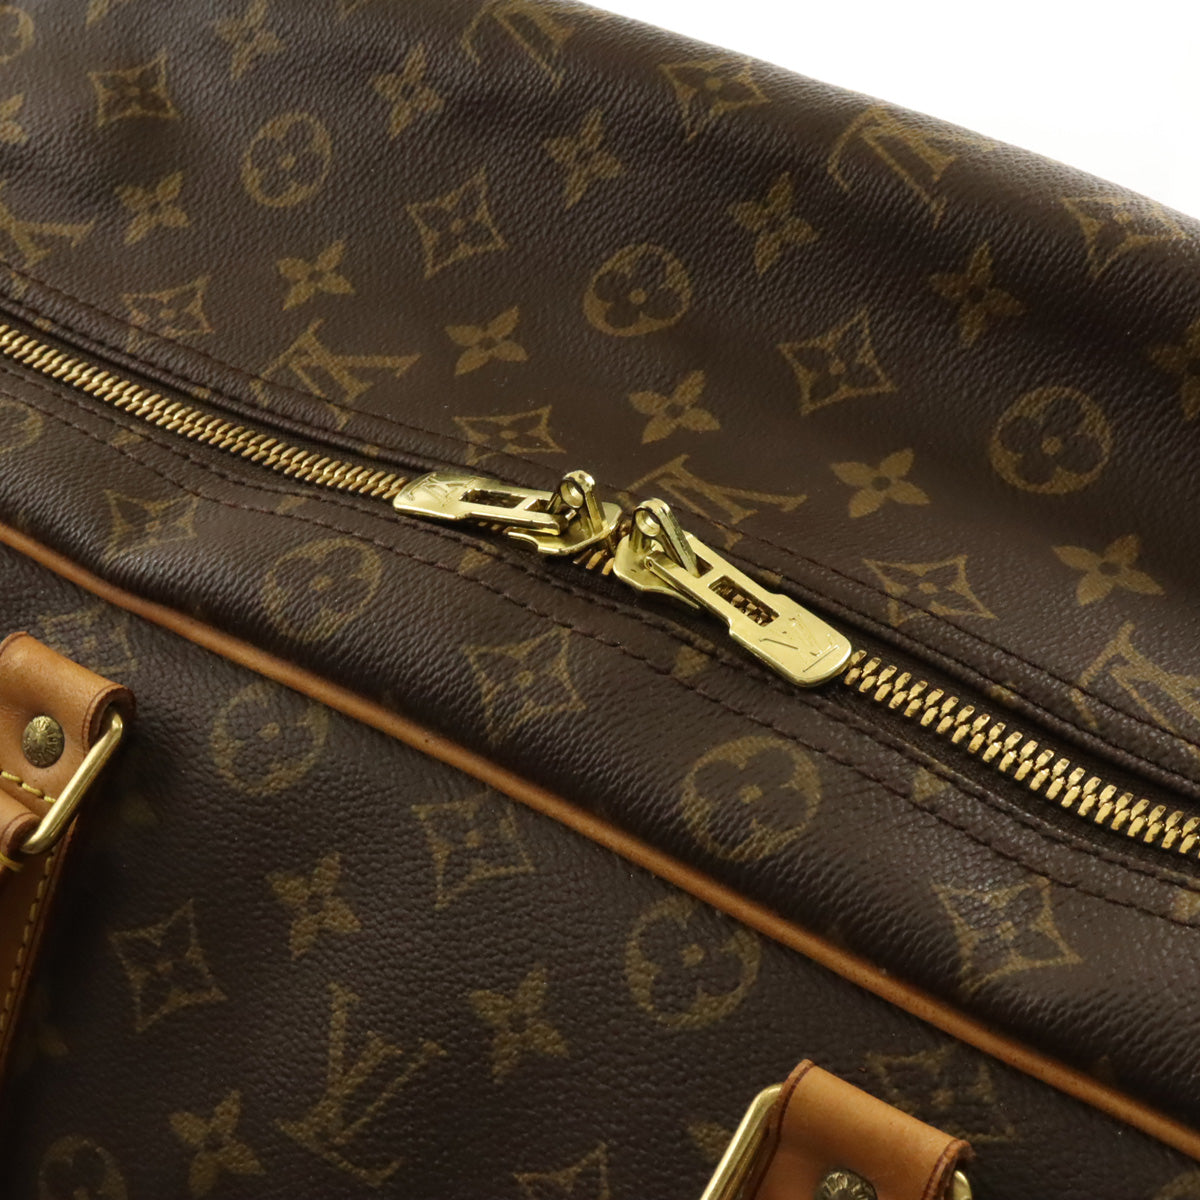 Louis Vuitton Monogram Sirius 70 Boston Bag Travel Bag M41400